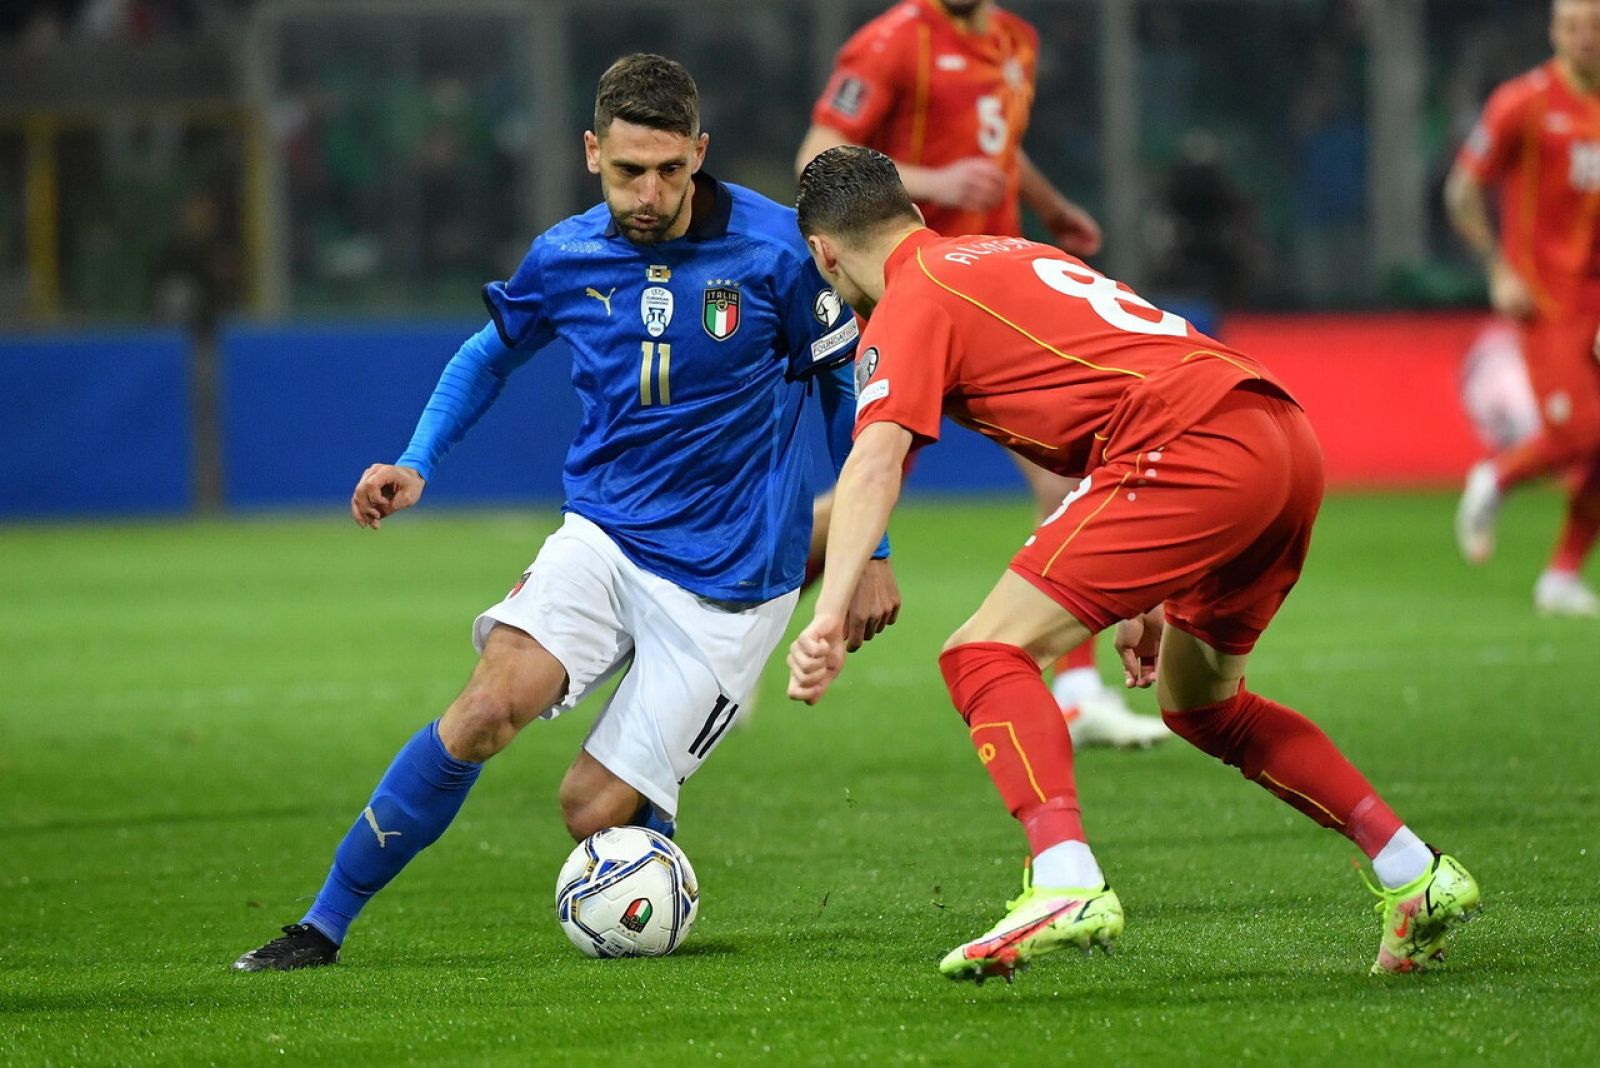 Fútbol - Clasificación Campeonato del Mundo. Play Off 1: Italia - Macedonia del Norte - ver ahora